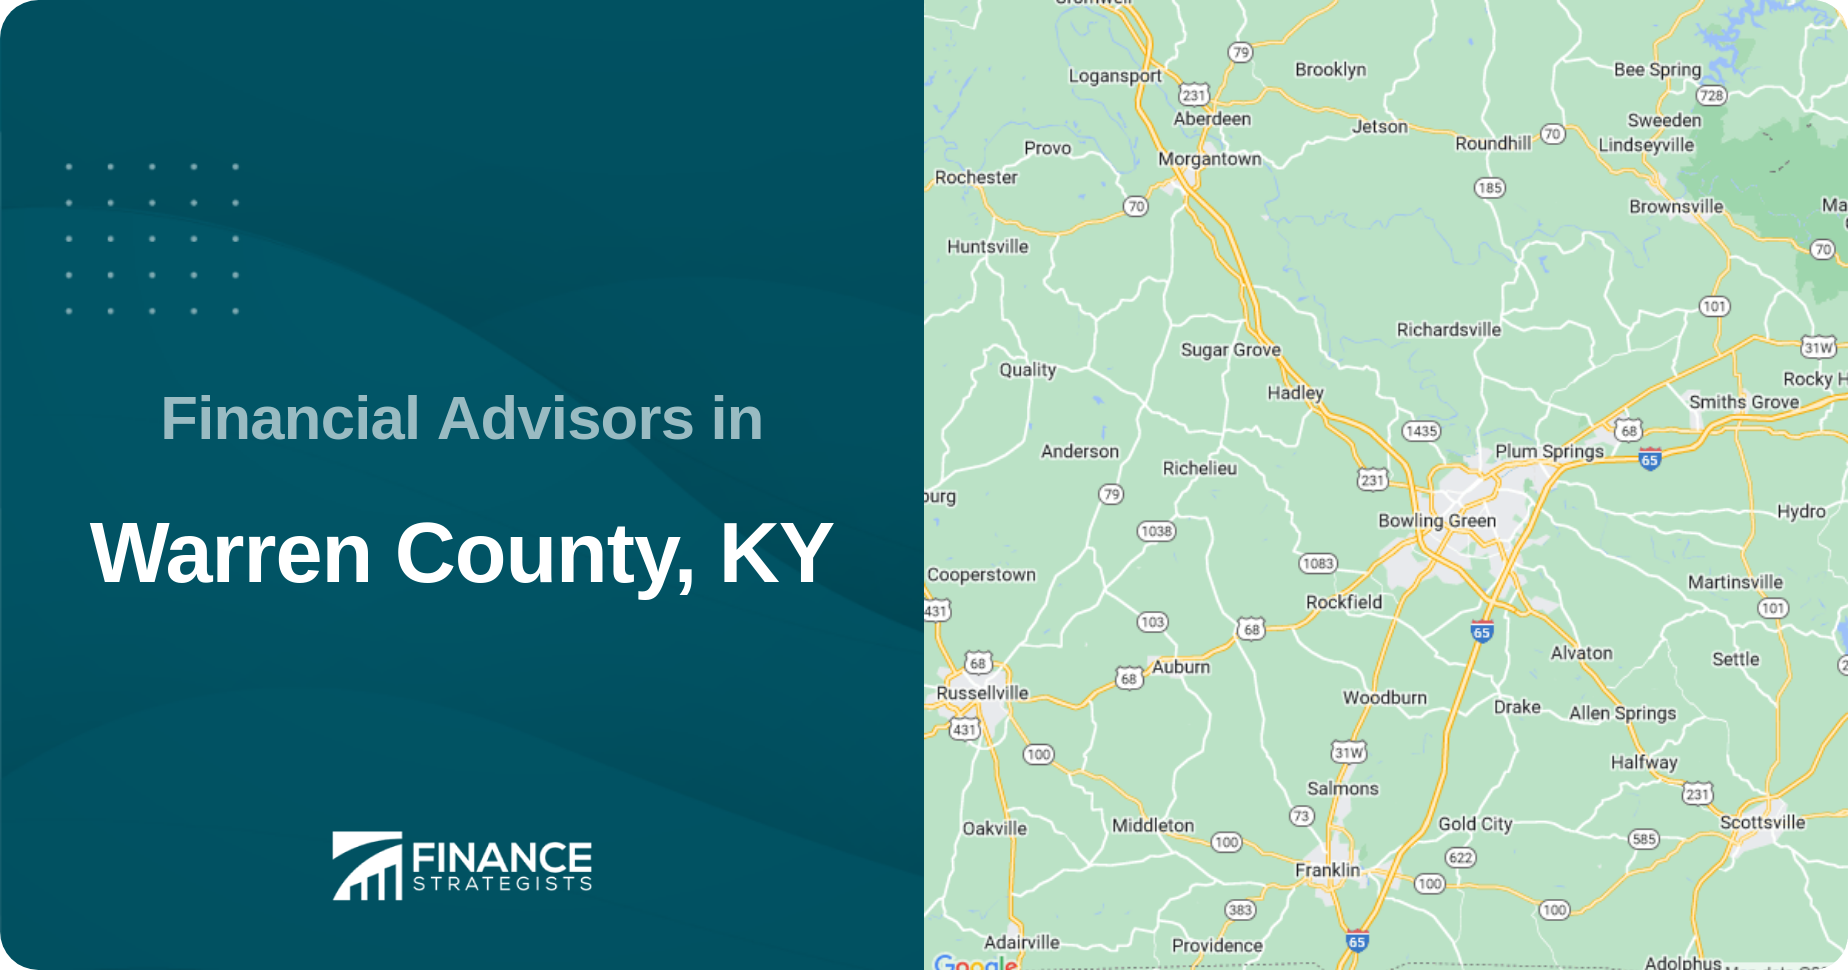 Financial Advisors in Warren County, KY